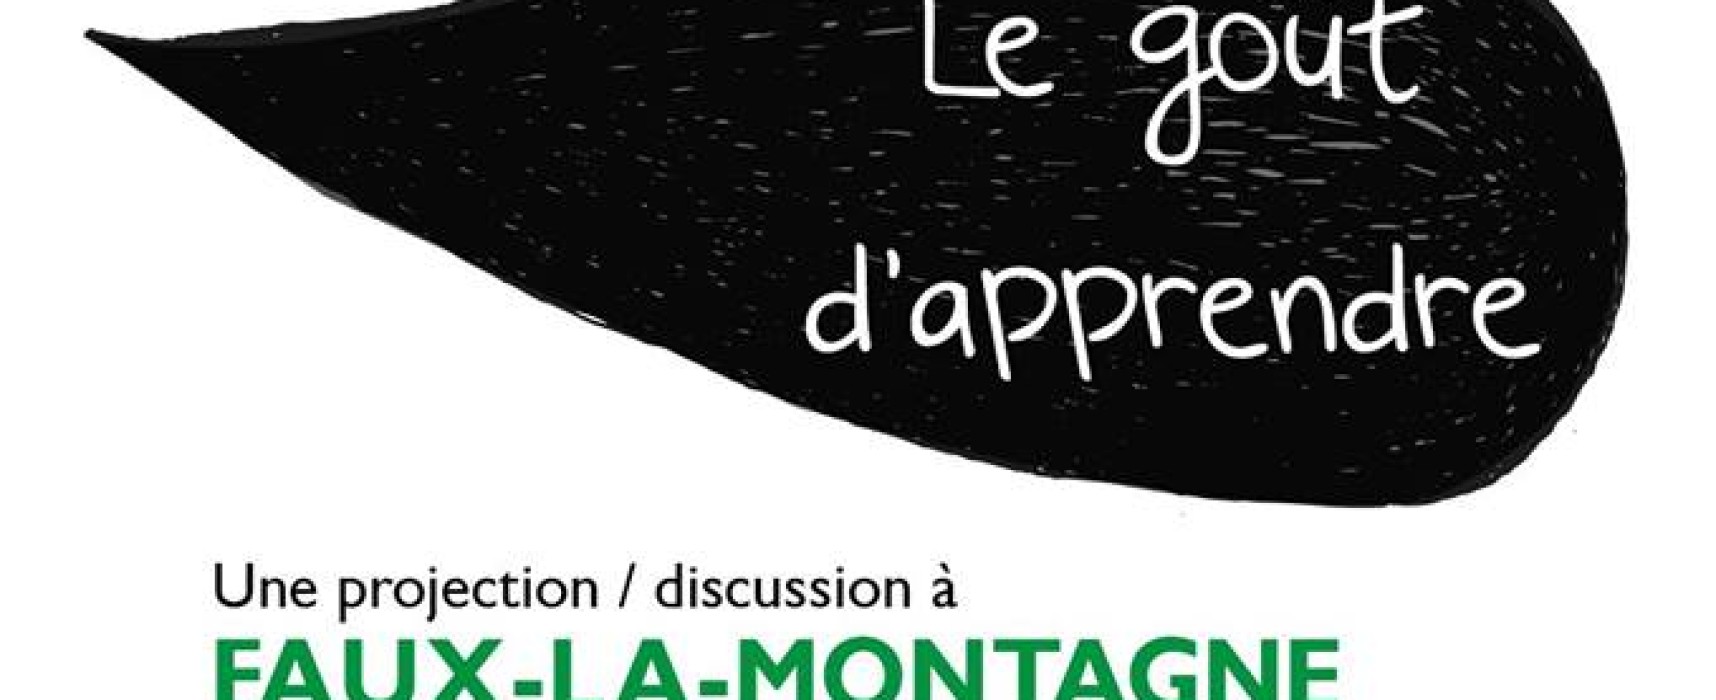 Le goût d’apprendre – projection discussion #FauxlaMontagne